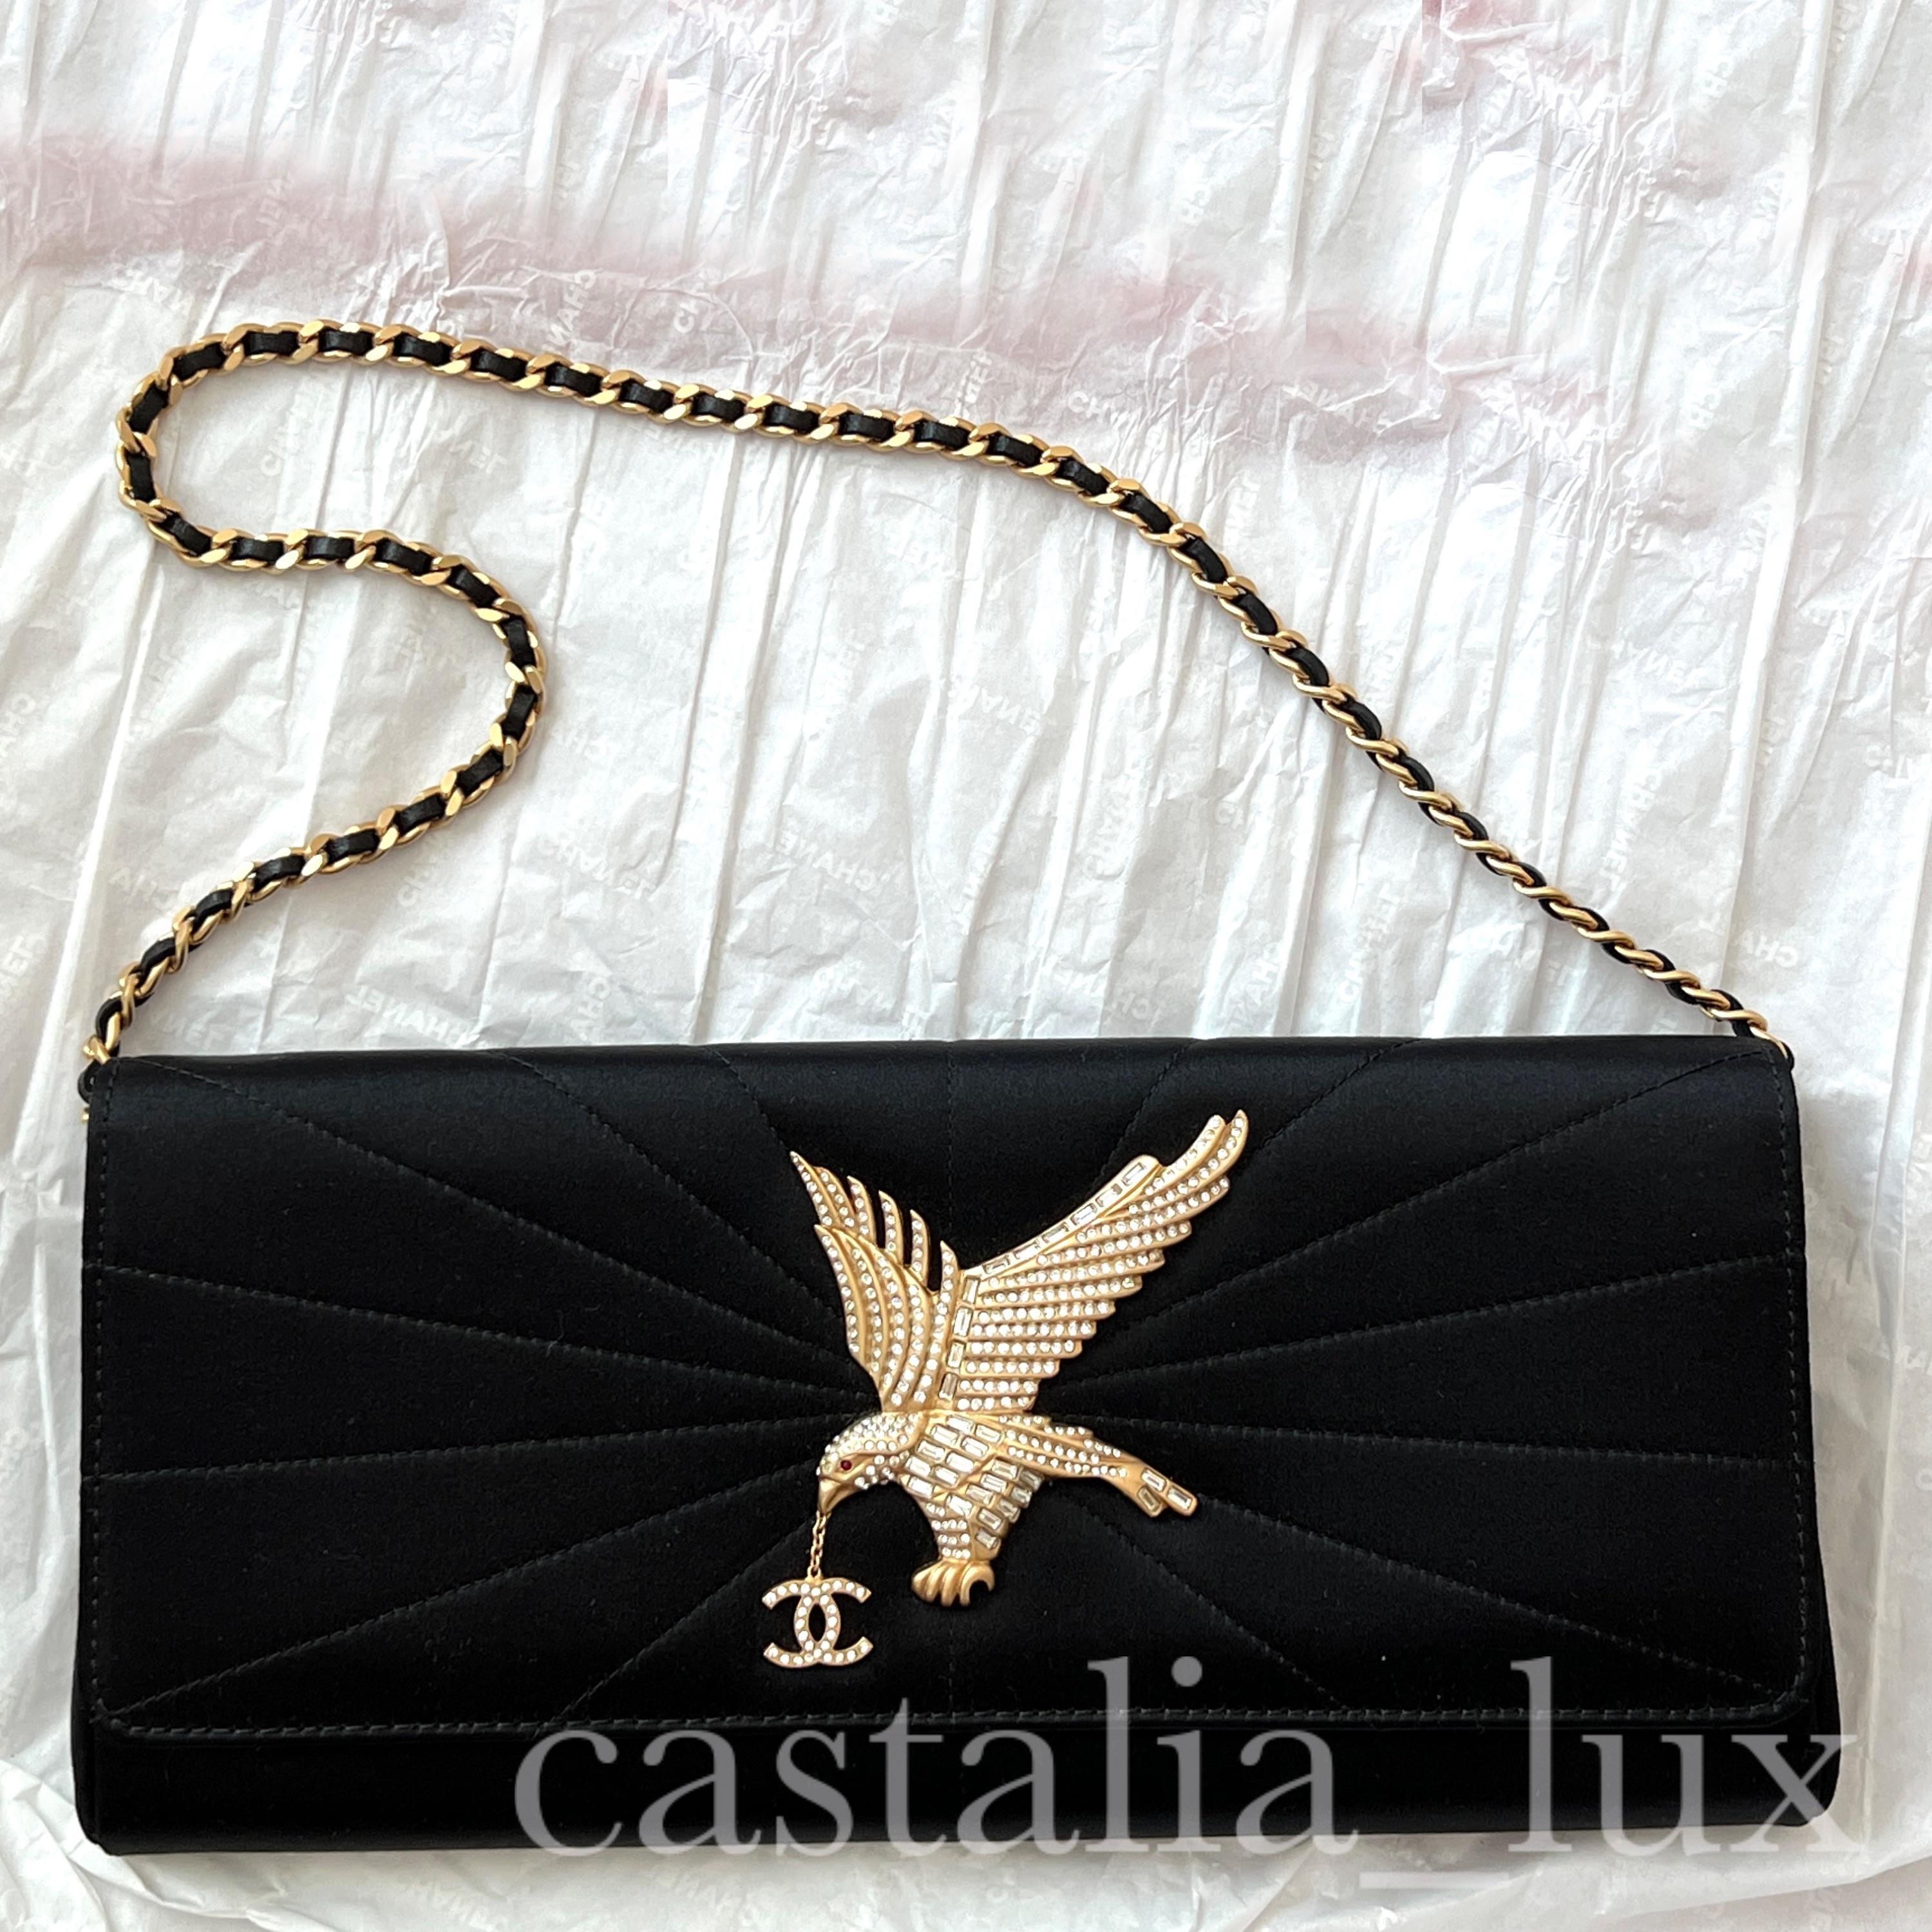 Chanel New Super Rare CC Jewel Eagle Flap Bag 2